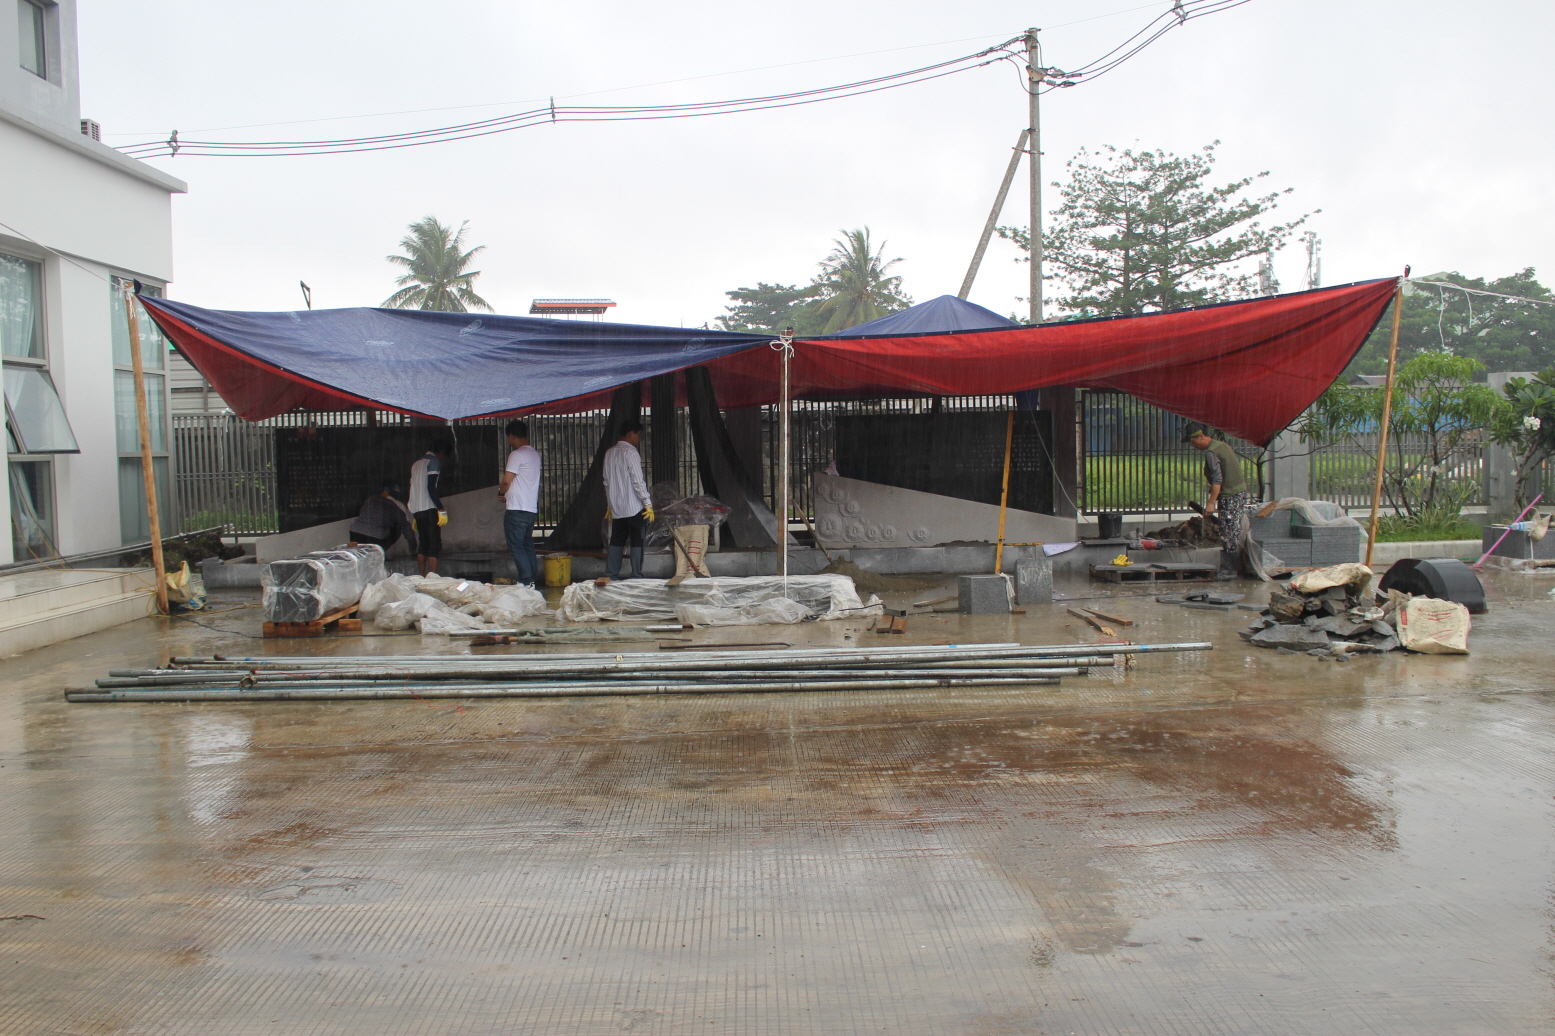 미얀마의 우기인 7월에 비를 피하기 위해 천막을 쳐놓고 작업하는 중이다. 